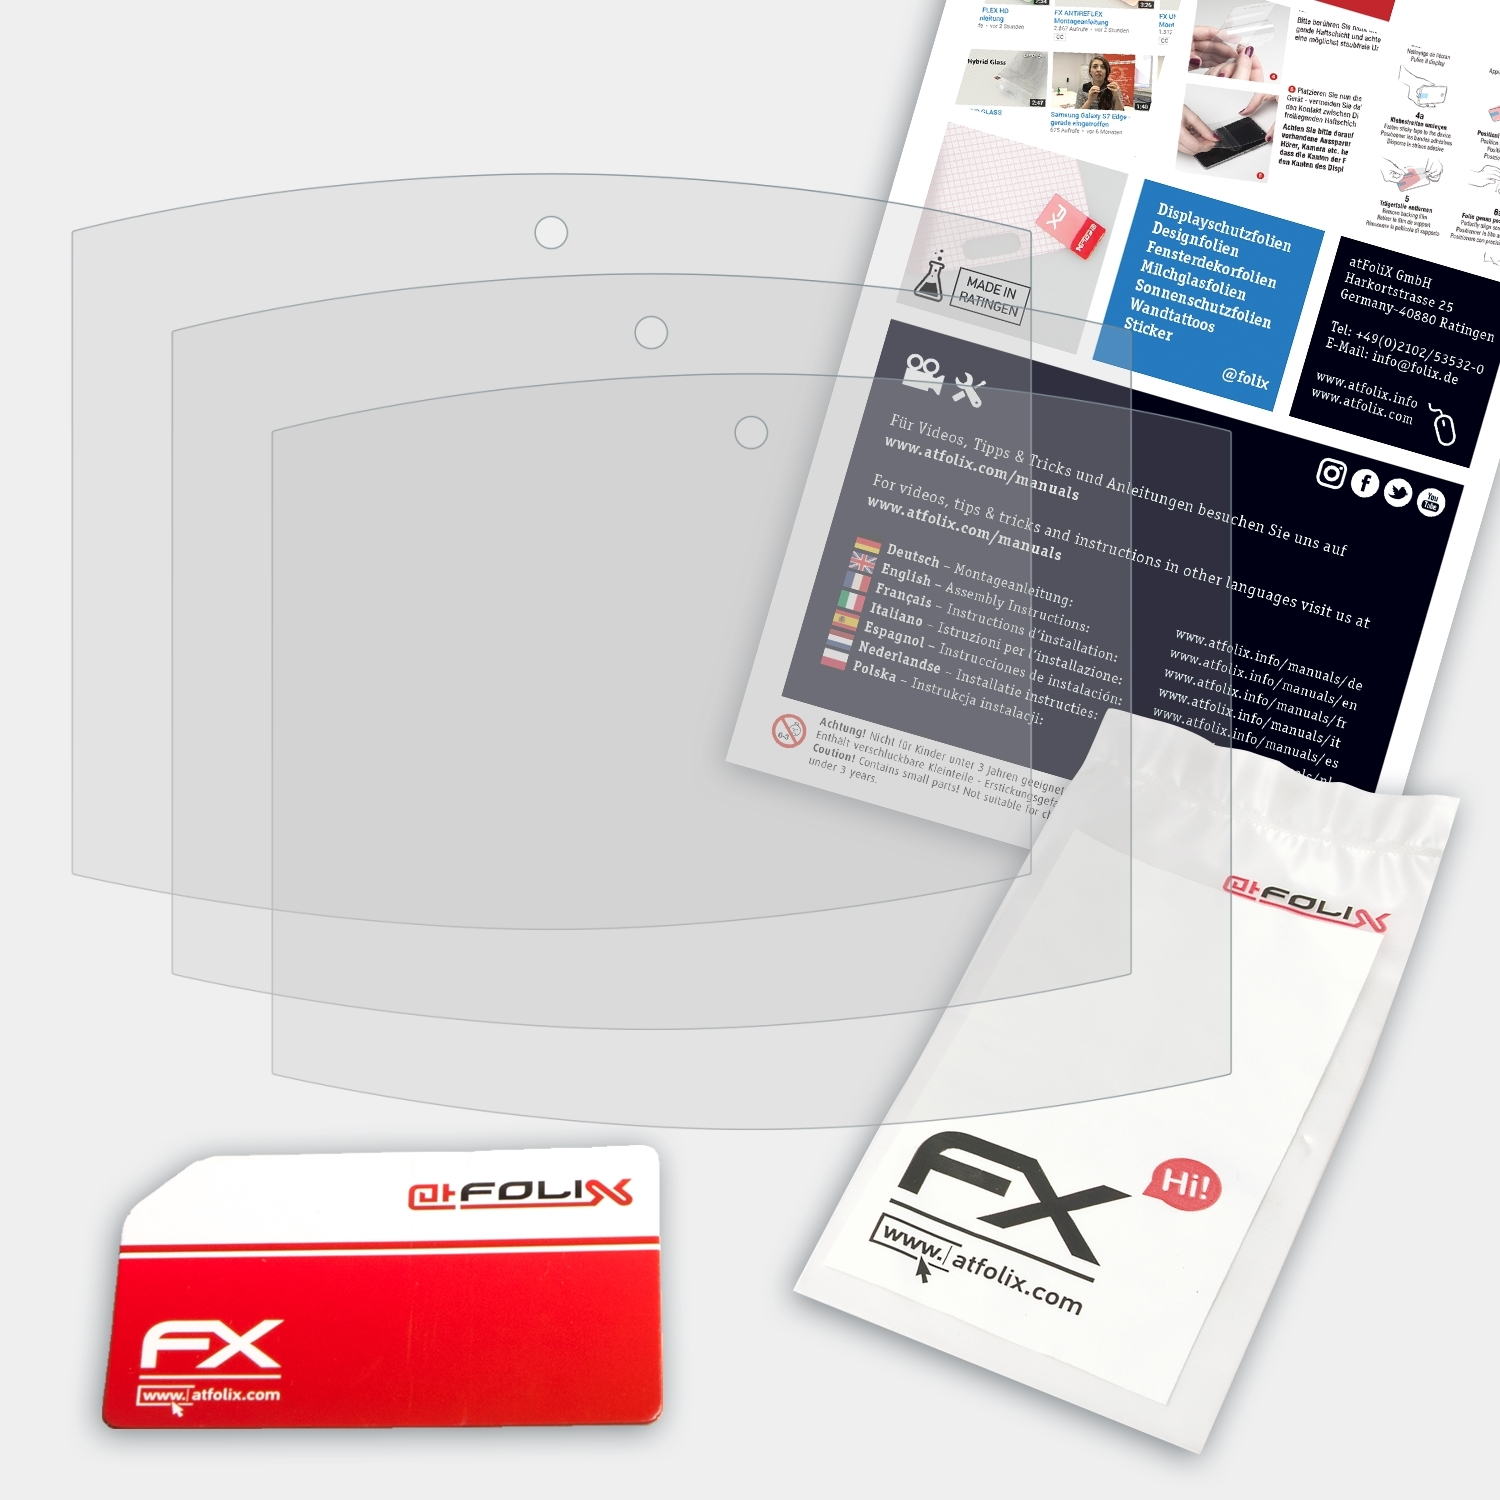 ATFOLIX 3x FX-Antireflex Displayschutz(für Orbsmart Soundpad 500)